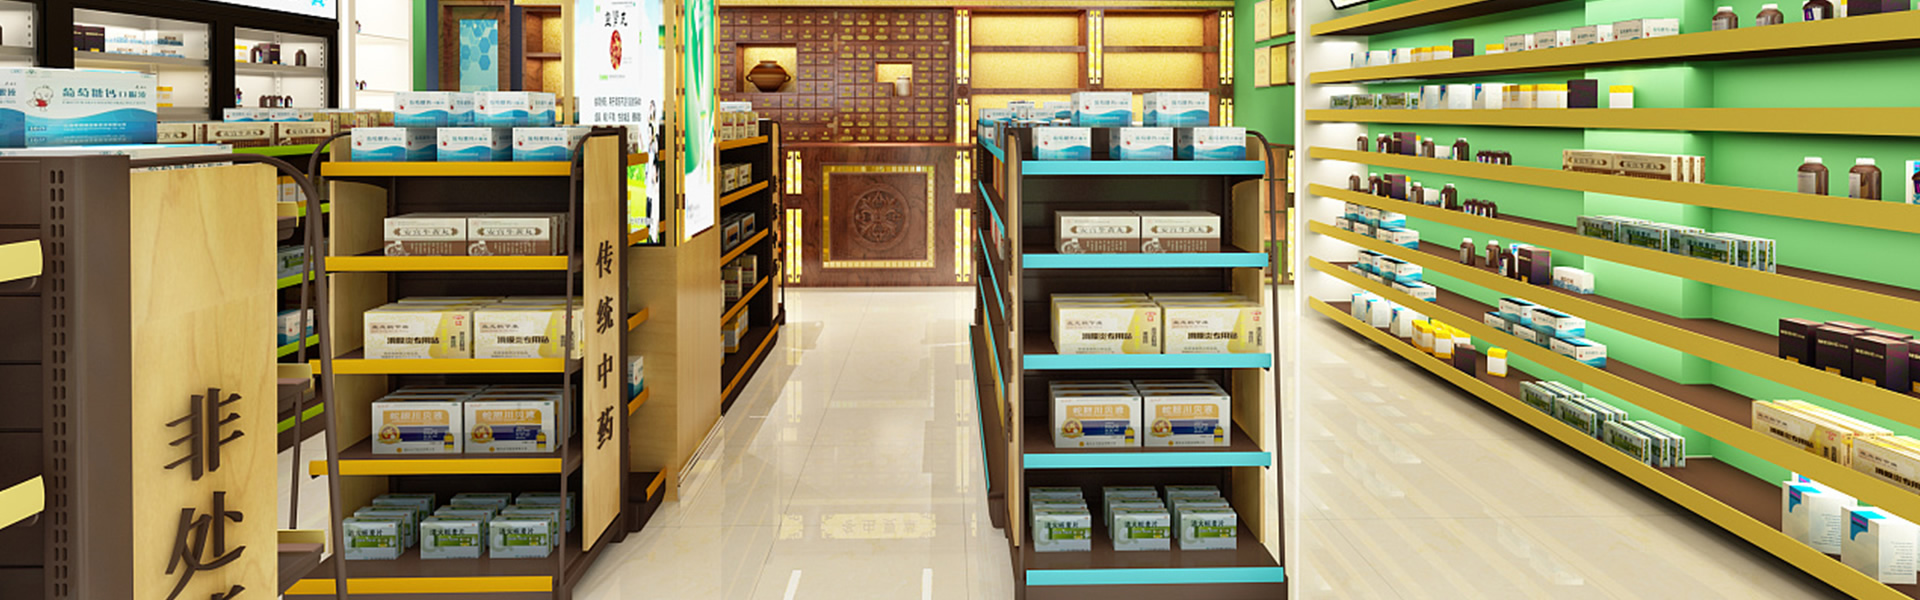 Drugstore shelves